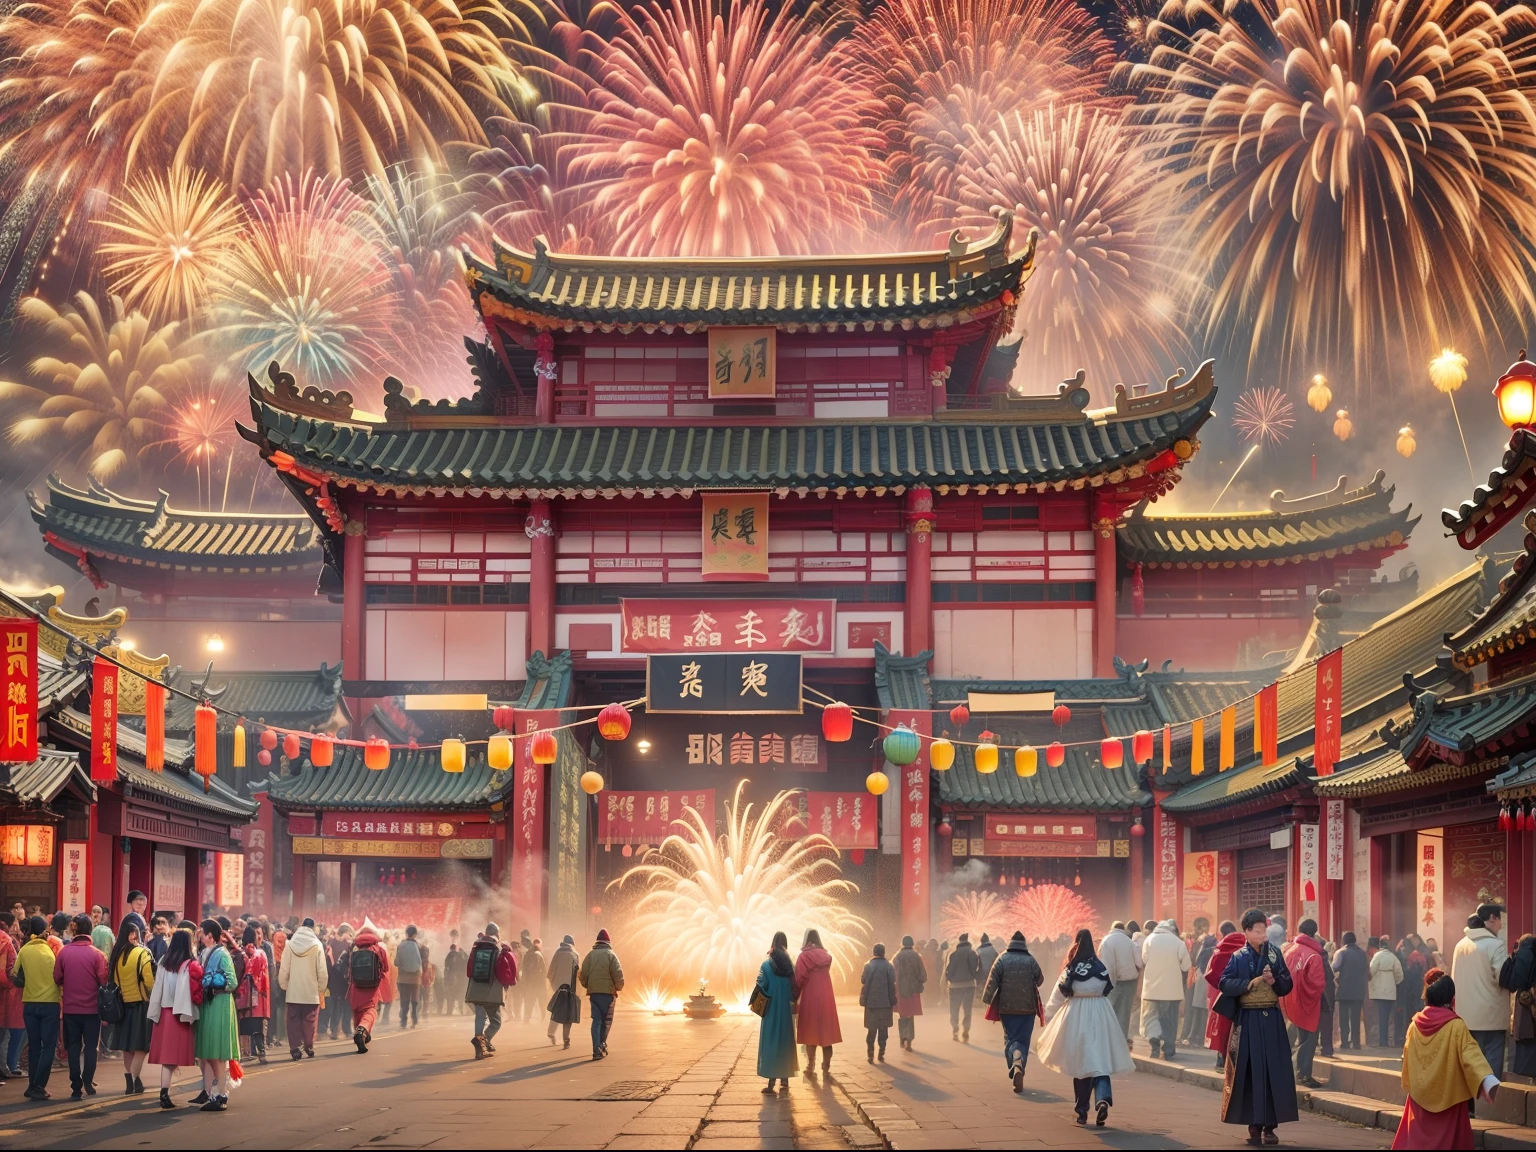 ciudad antigua china，ambiente festivo，Celebra el Festival de Primavera，Brillantes fuegos artificiales，enormes fuegos artificiales，Extremadamente colorido，vistoso